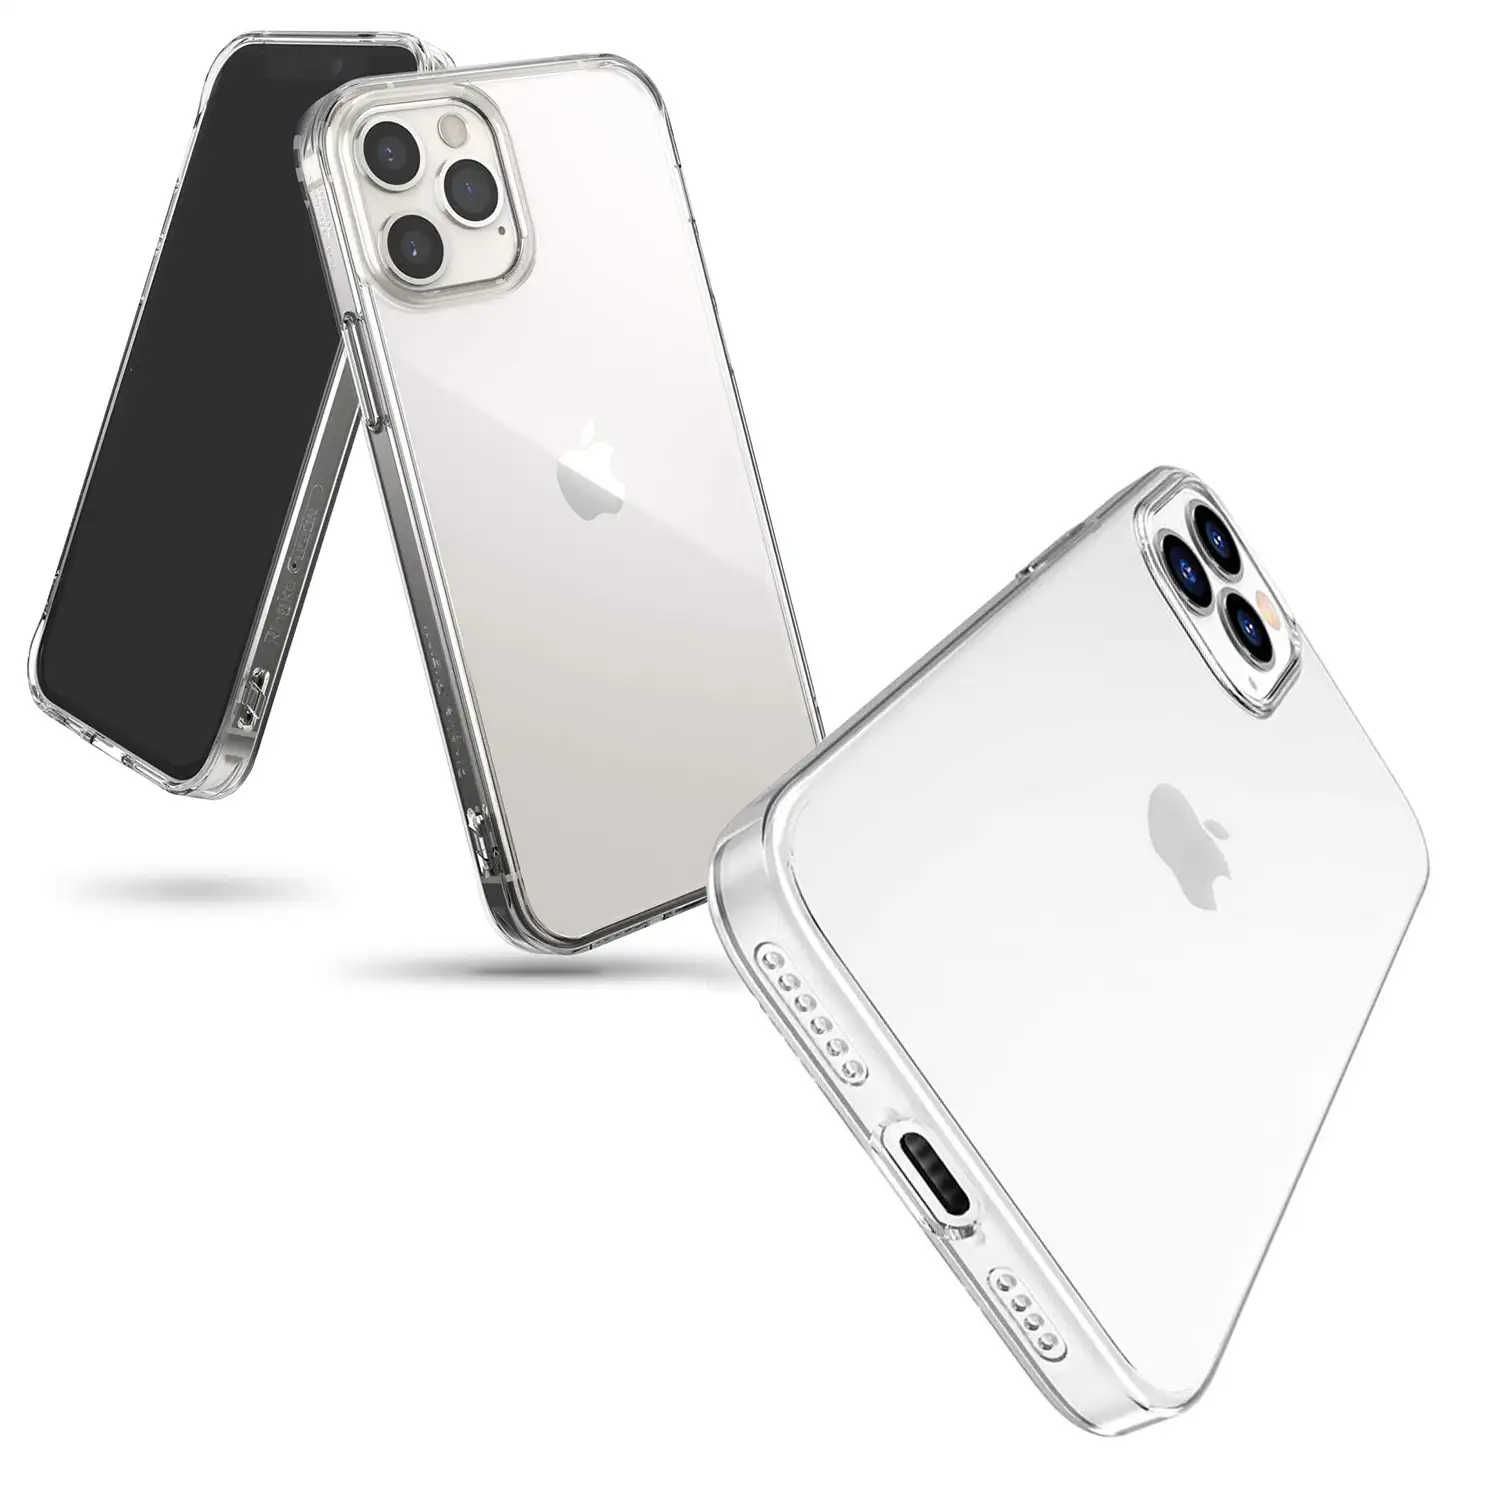 Carcasa de TPU transparente suave para iPhone 12 Pro Max